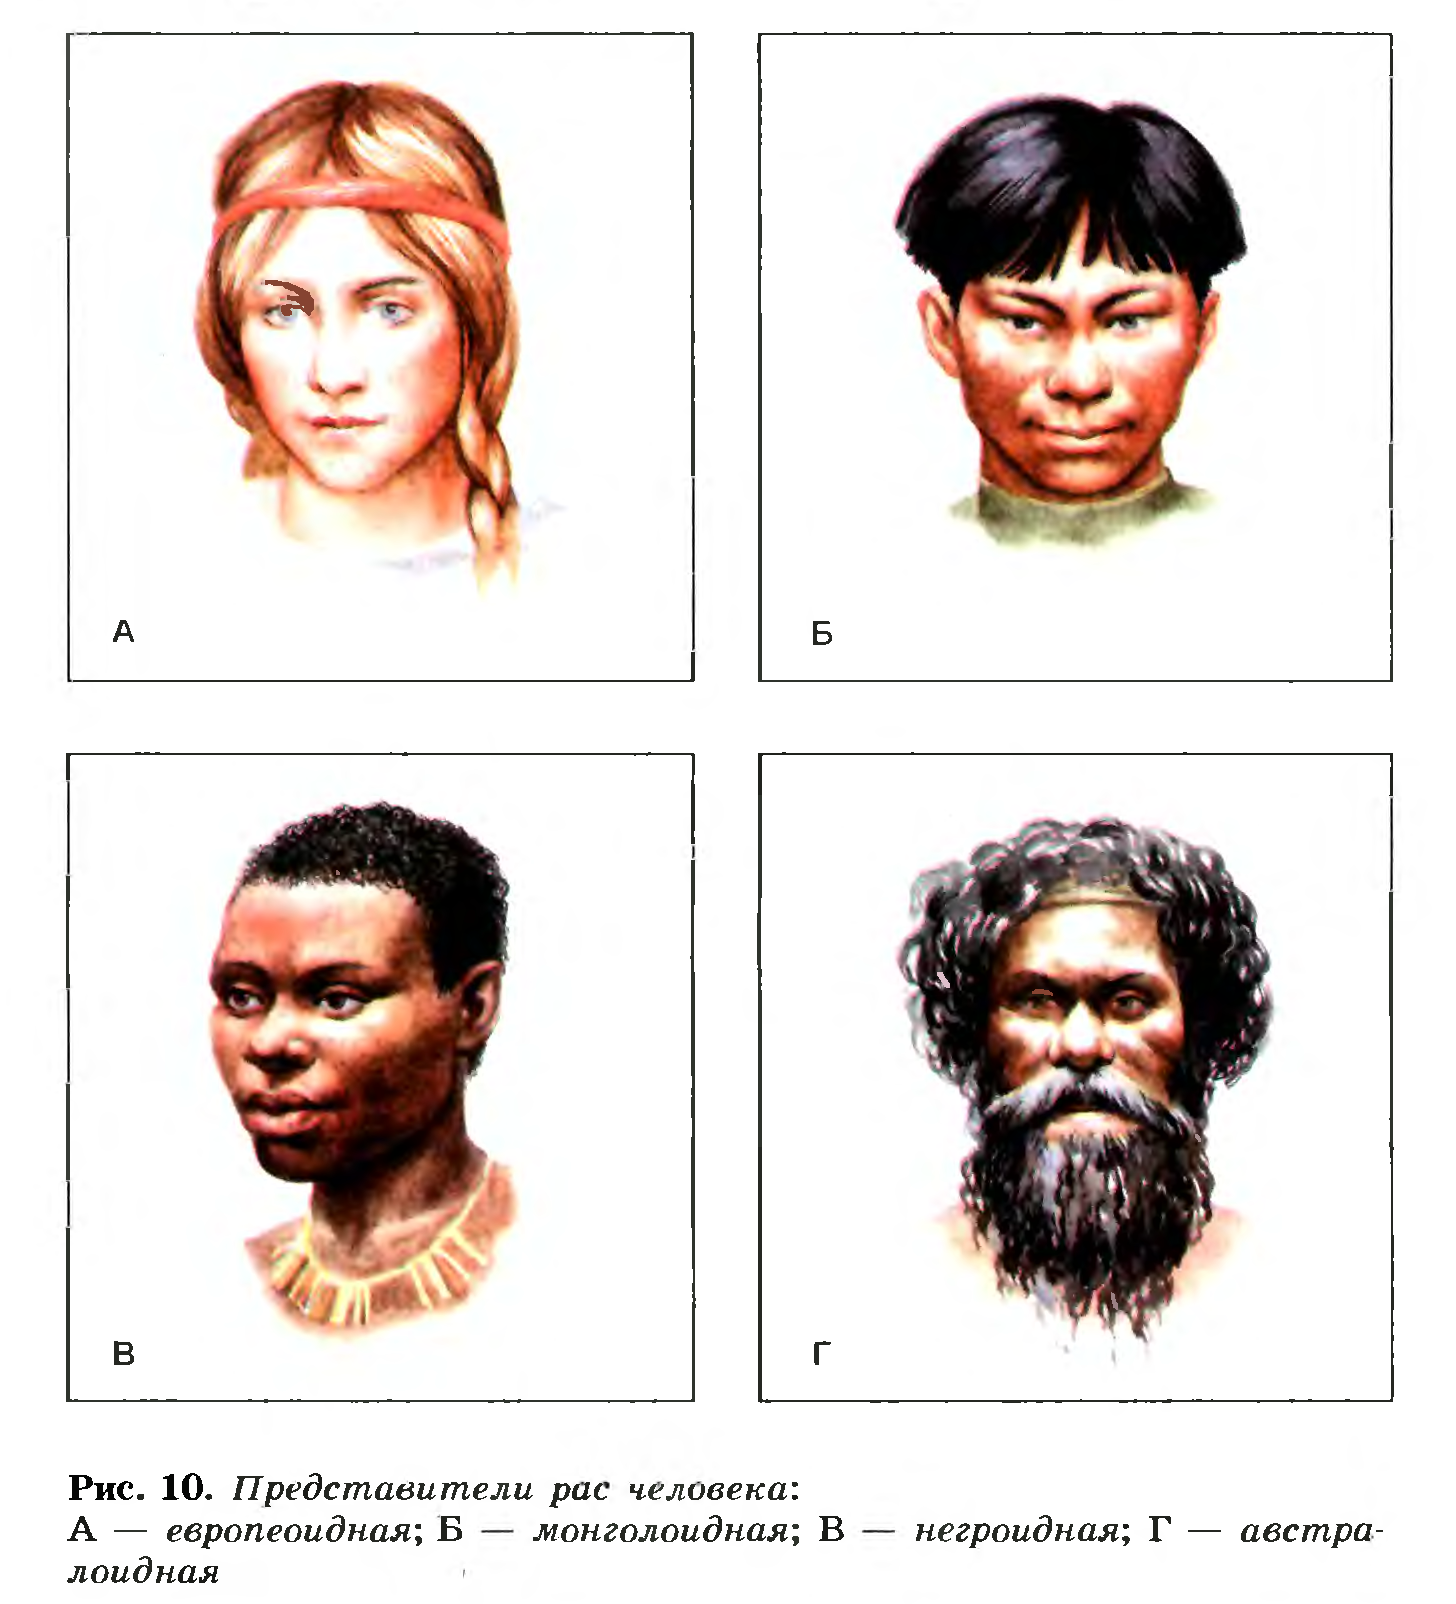 Назовите расы людей. Люди европеоидной и монголоидной расы. Негроидная и монголоидная раса. 4 Расы людей европеоидная монголоидная негроидная и. 4 Расы людей на земле.